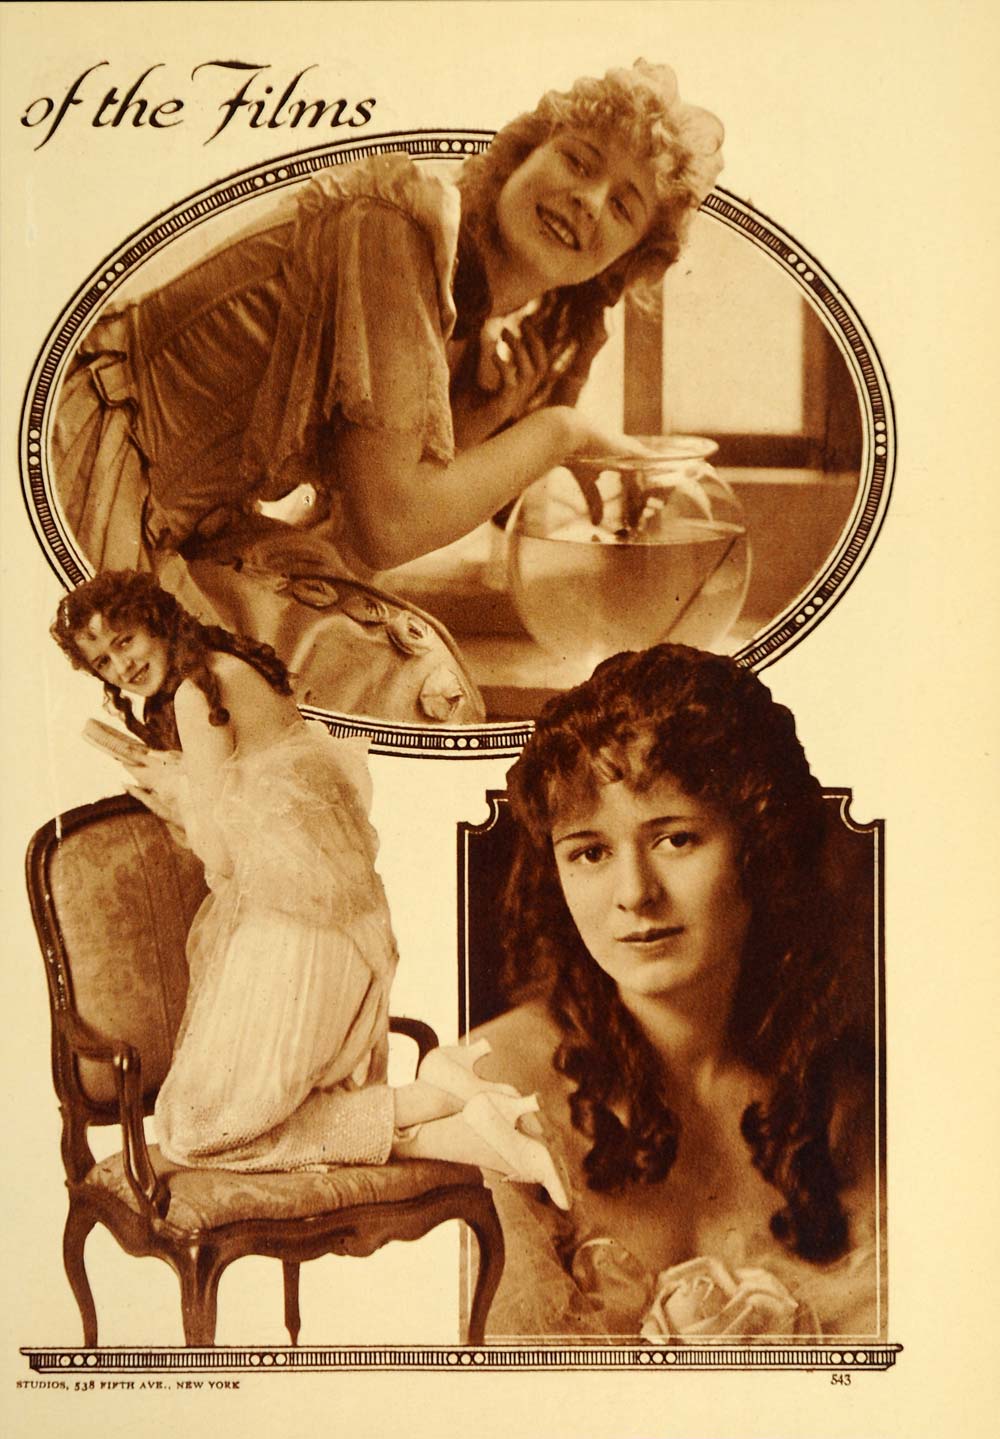 1916 Anita Stewart Silent Film Actress Original Article - ORIGINAL OLD9